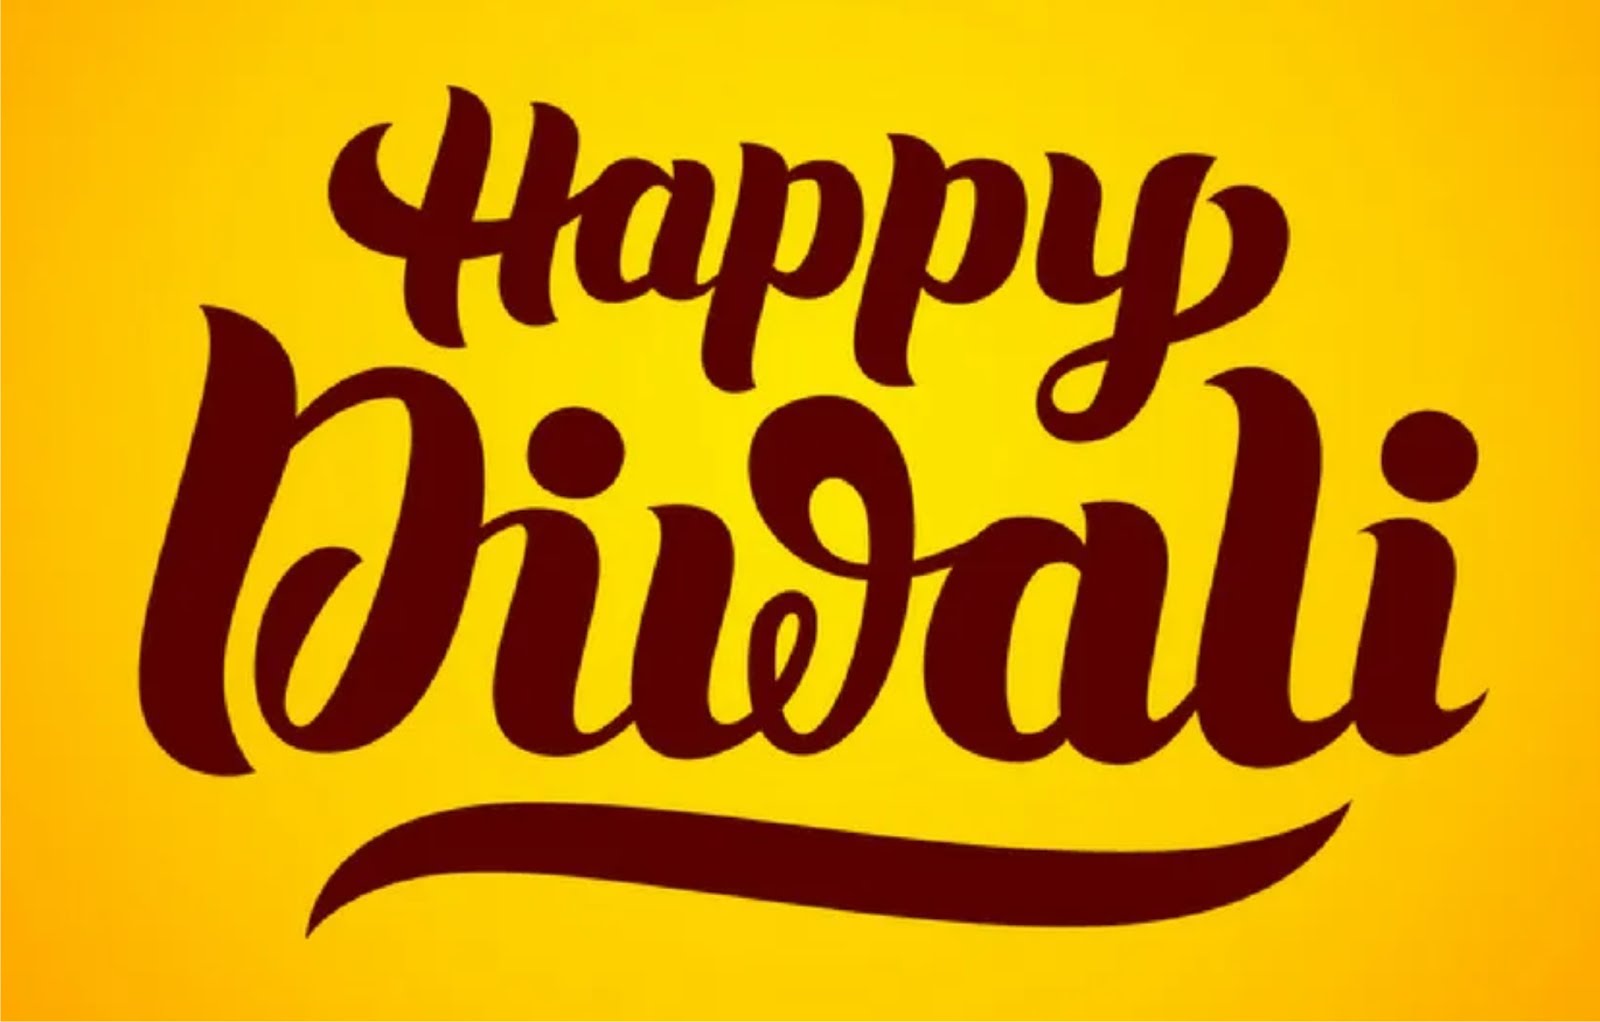 Happy Diwali Wishes 2020